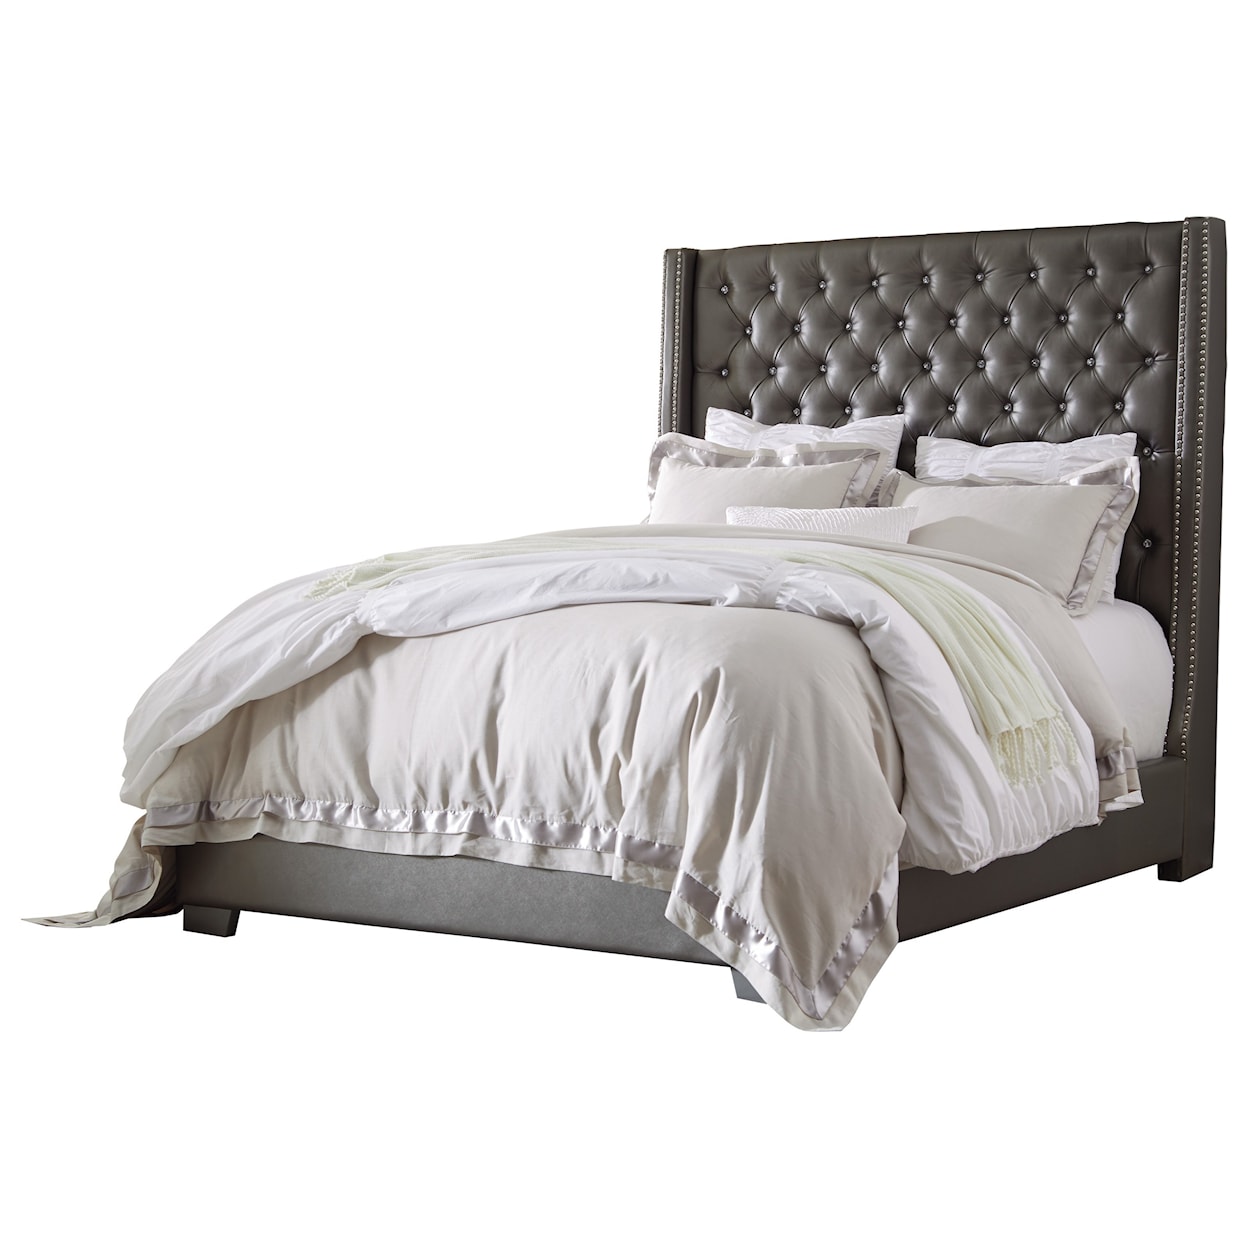 Michael Alan Select Coralayne King Upholstered Bed